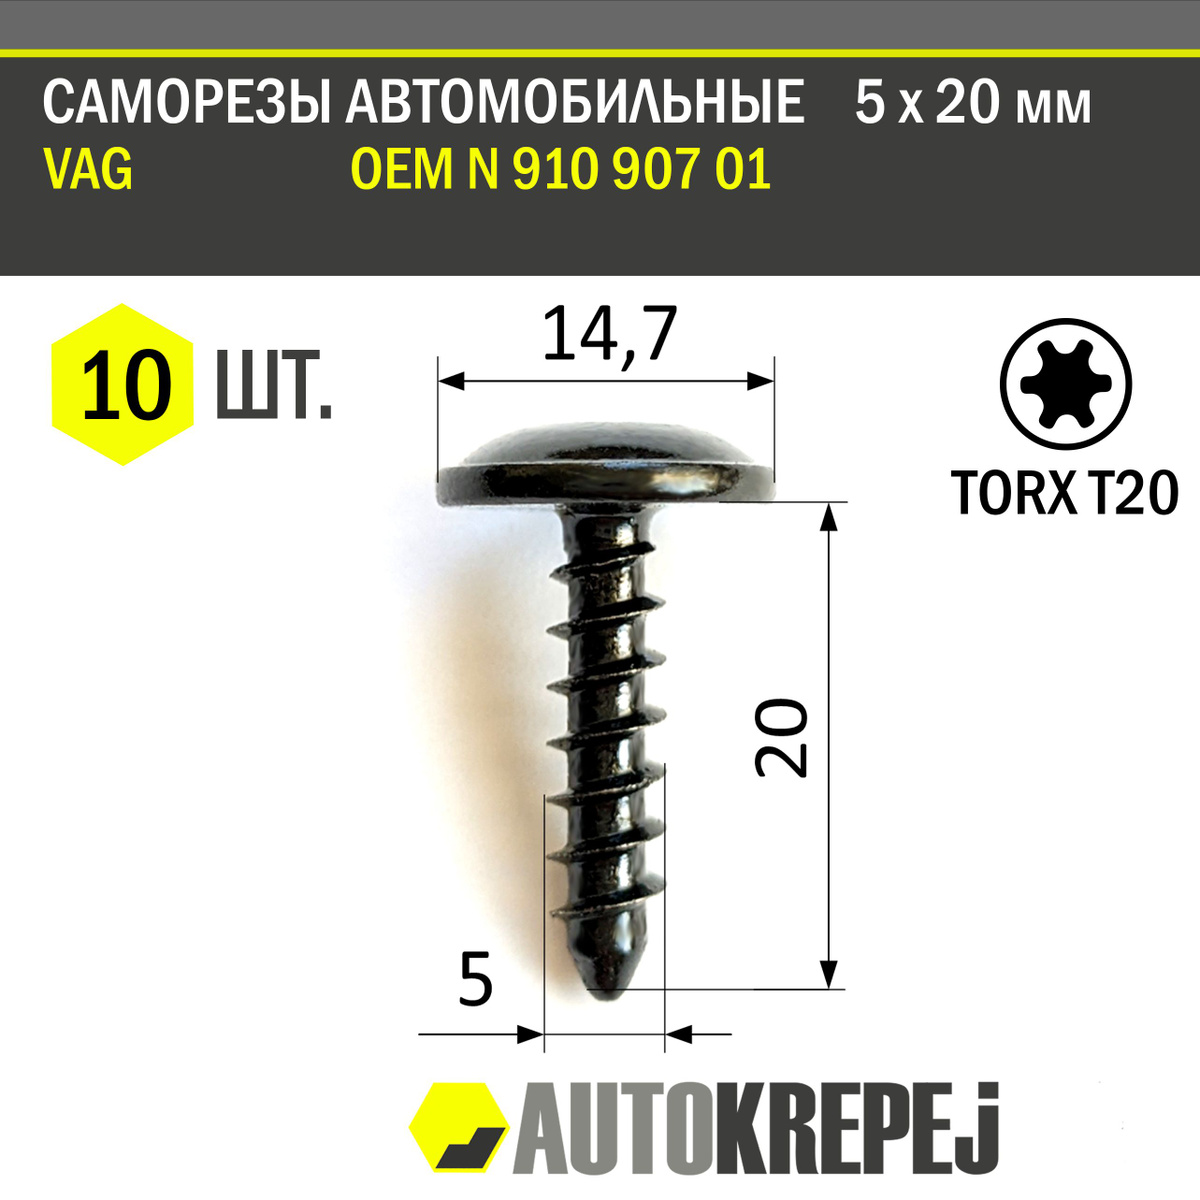 Похожие товары: Код 1207179301 Саморезы автомобильные 5 х 20 мм для VAG под ключ торкс Т20